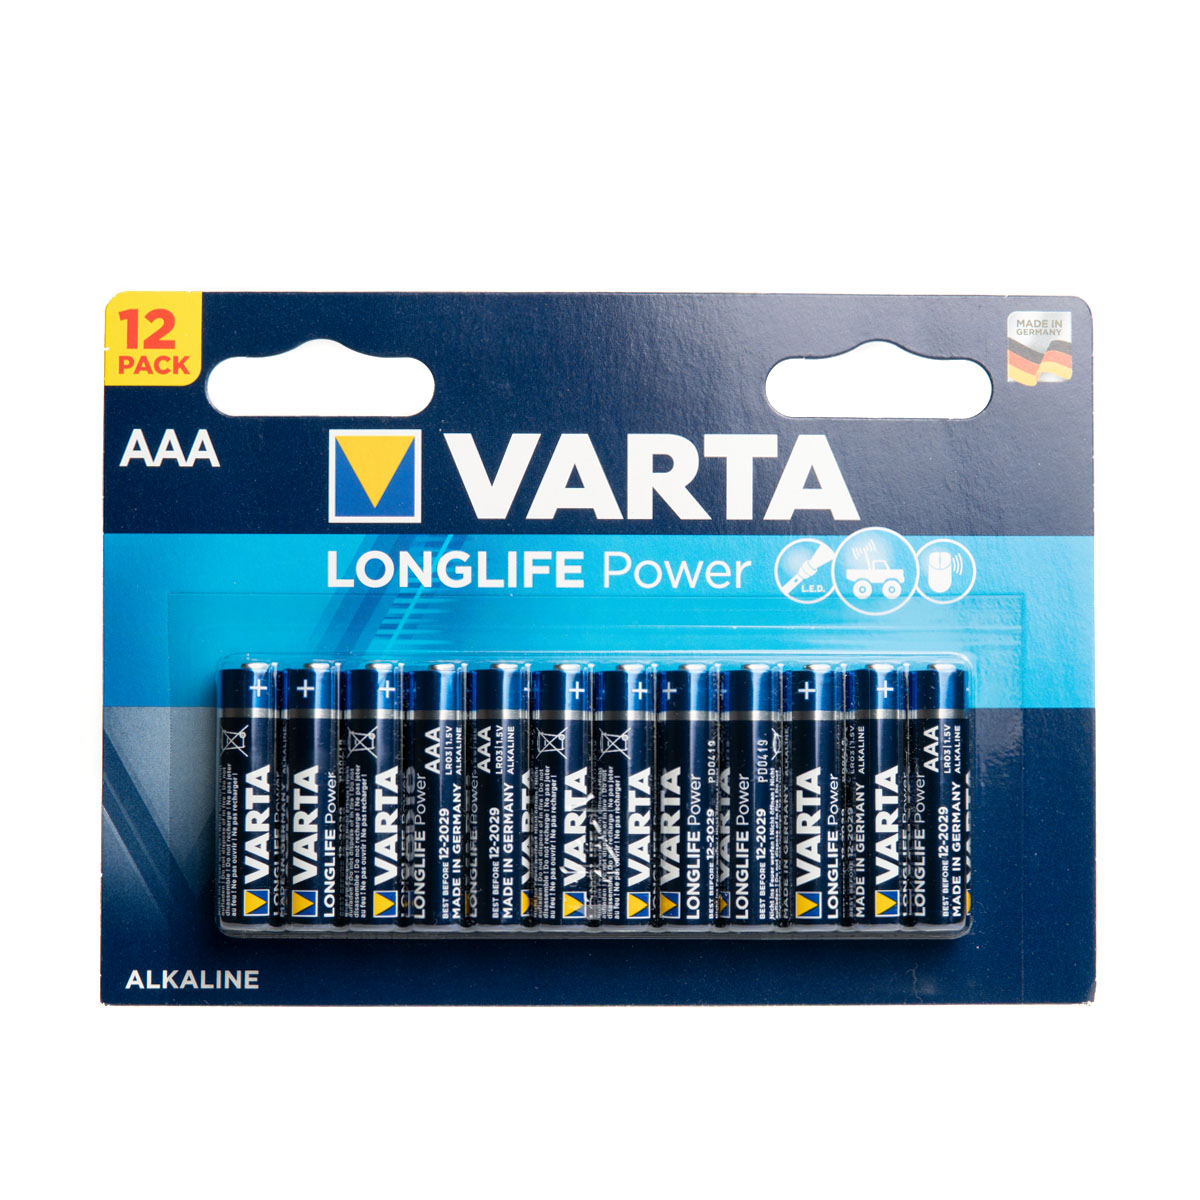 12 AAA Varta Longlife Power - 1.5V - AAA - Alkaline - Disposable